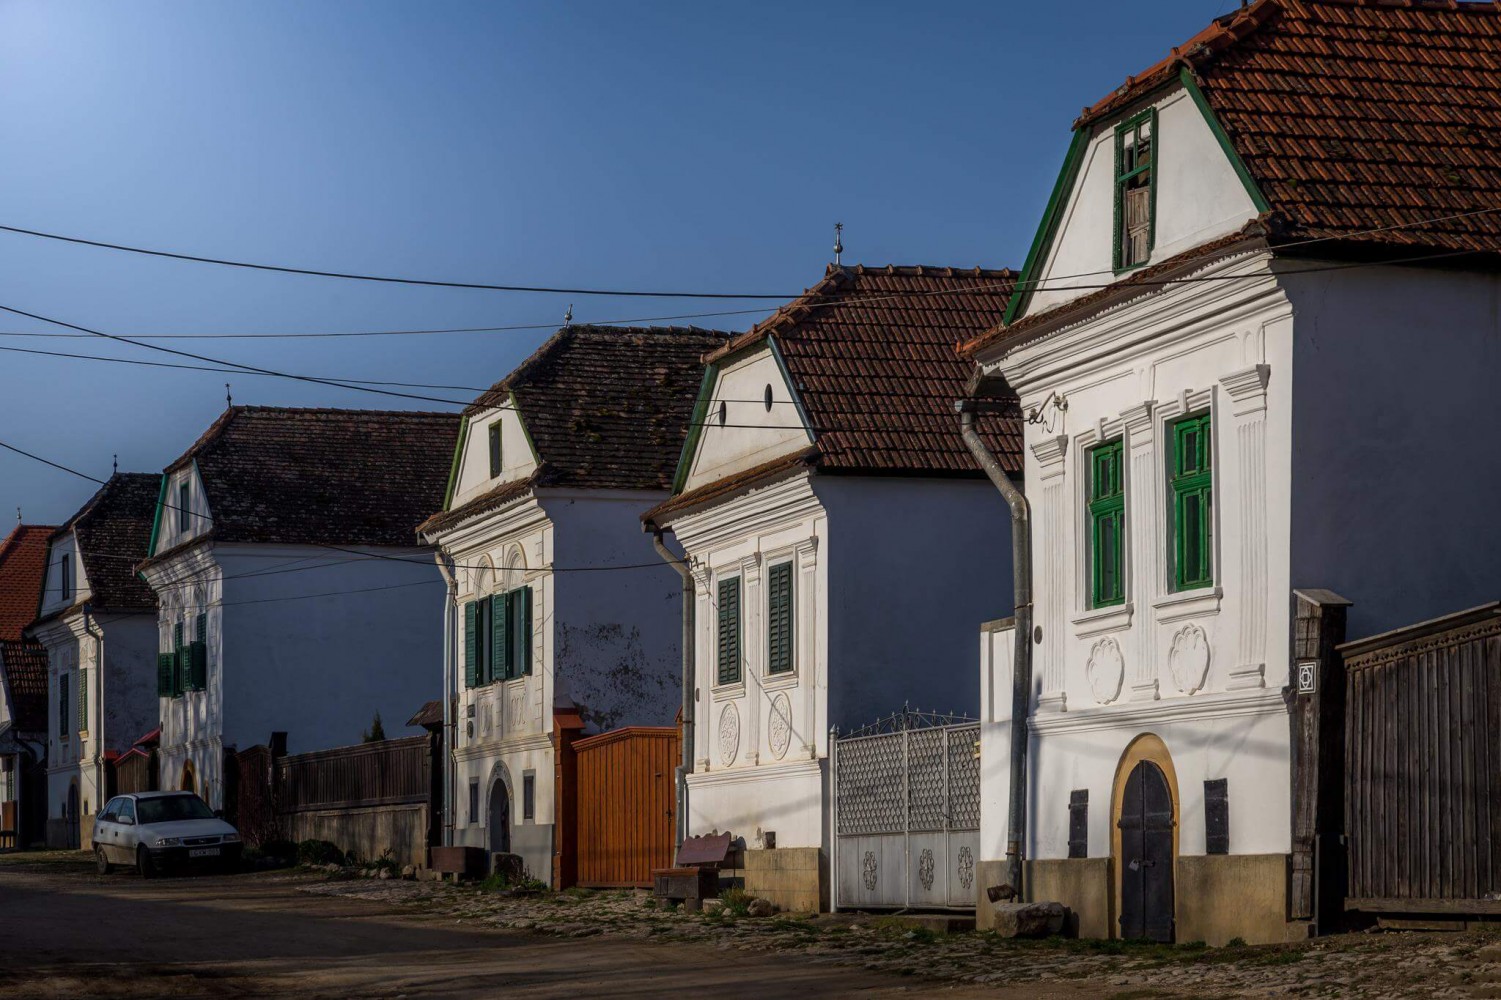 Satul Rimetea - case tradiționale